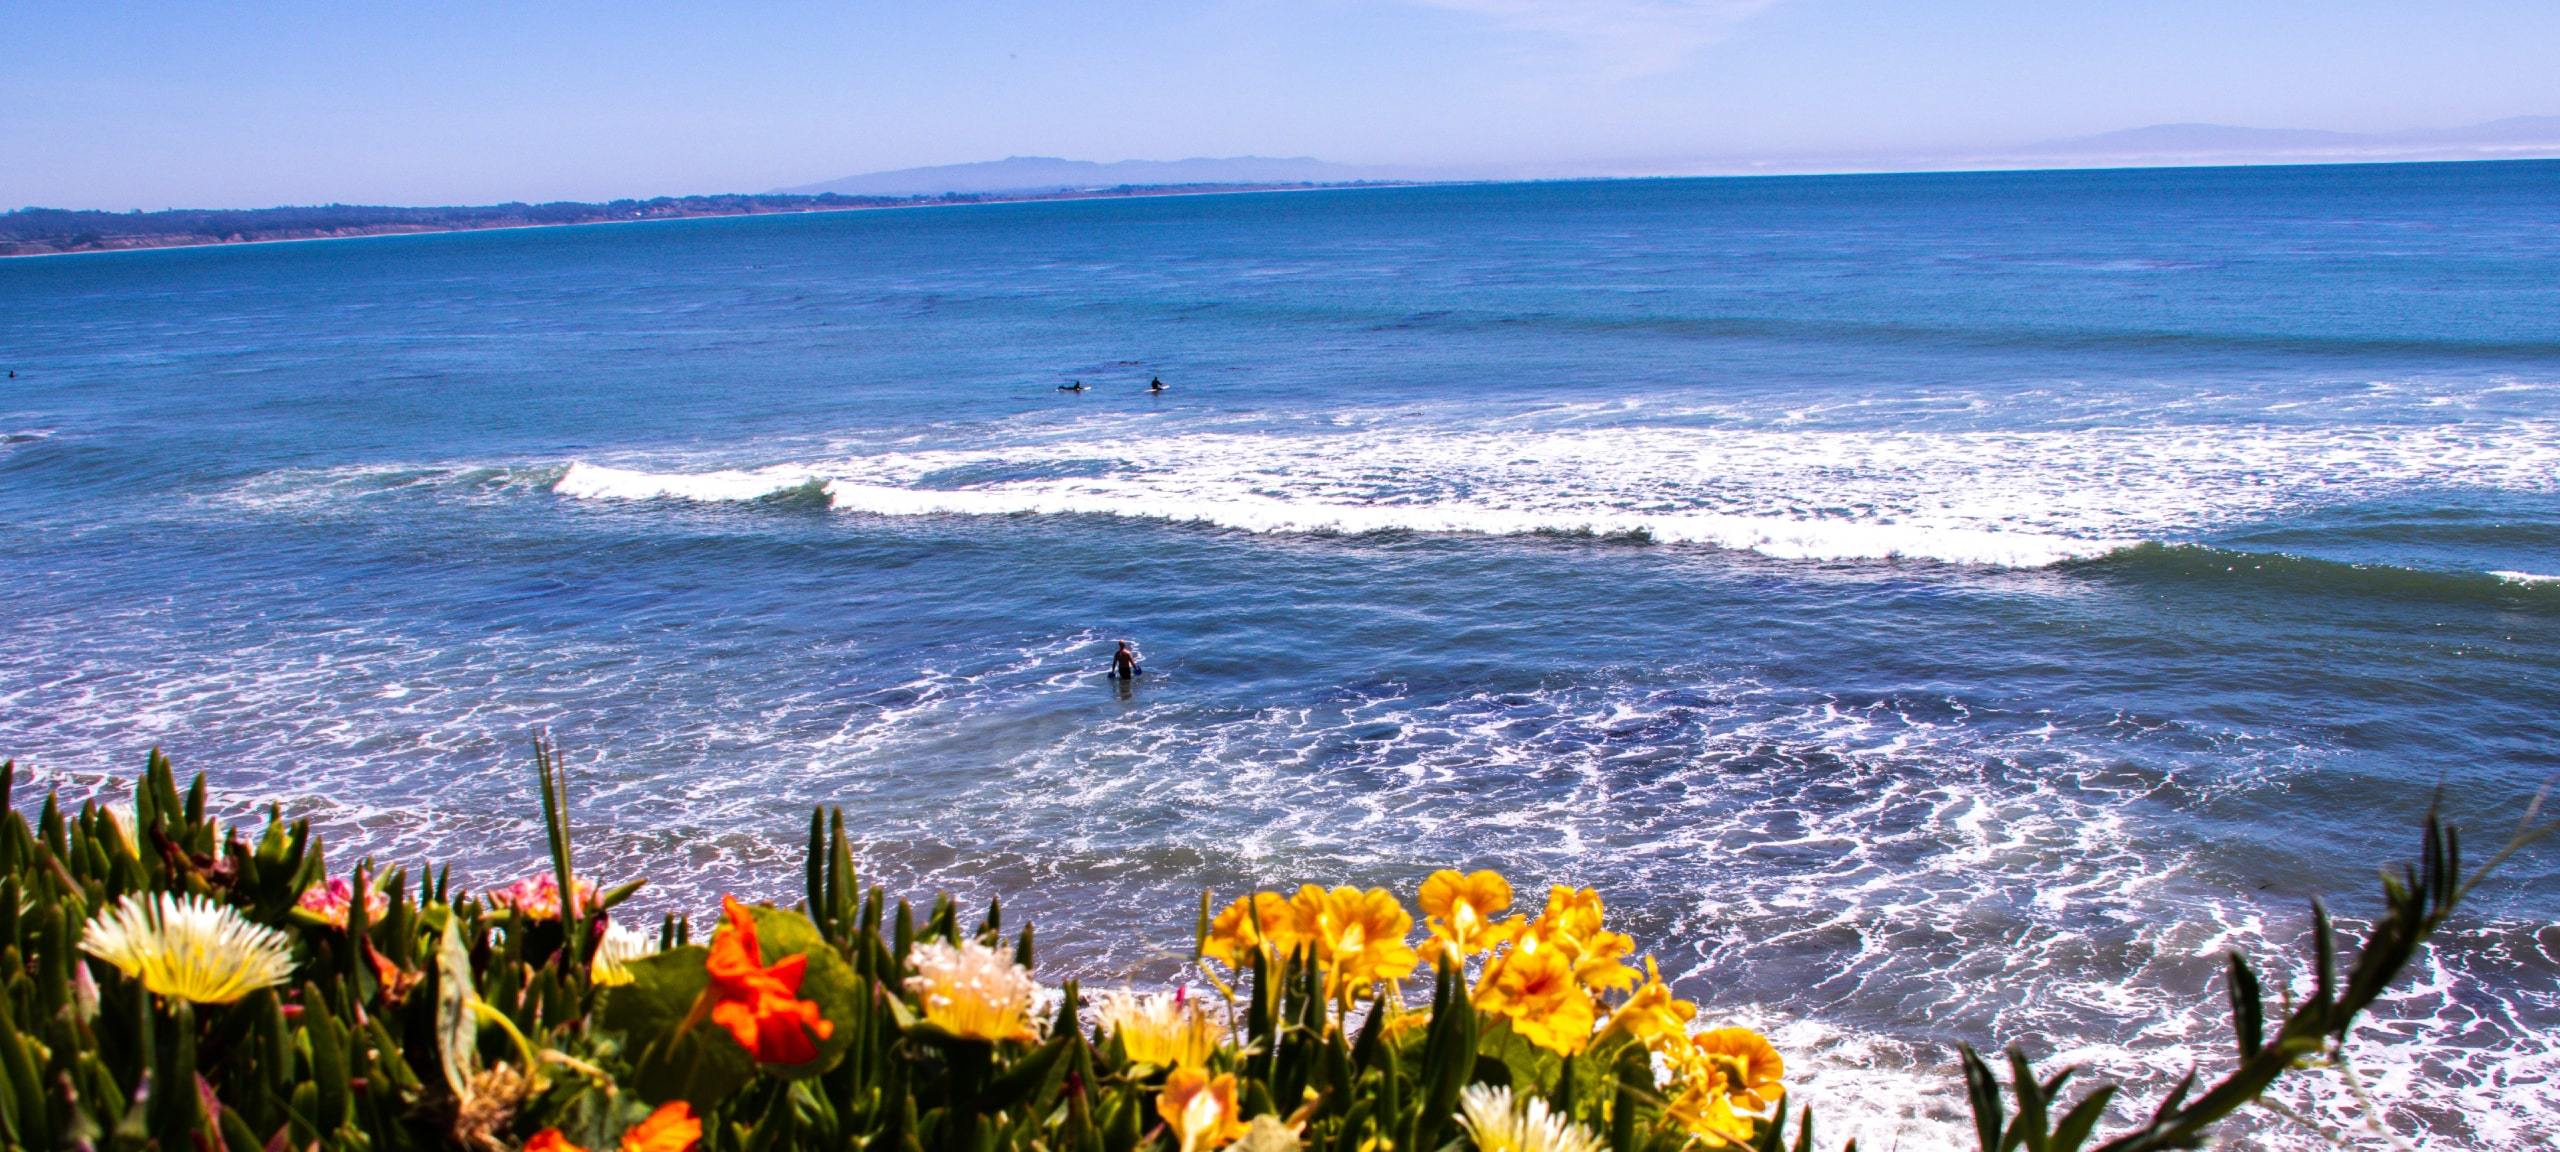 Flowers on cliff overlooking Santa Cruz, CA ocean